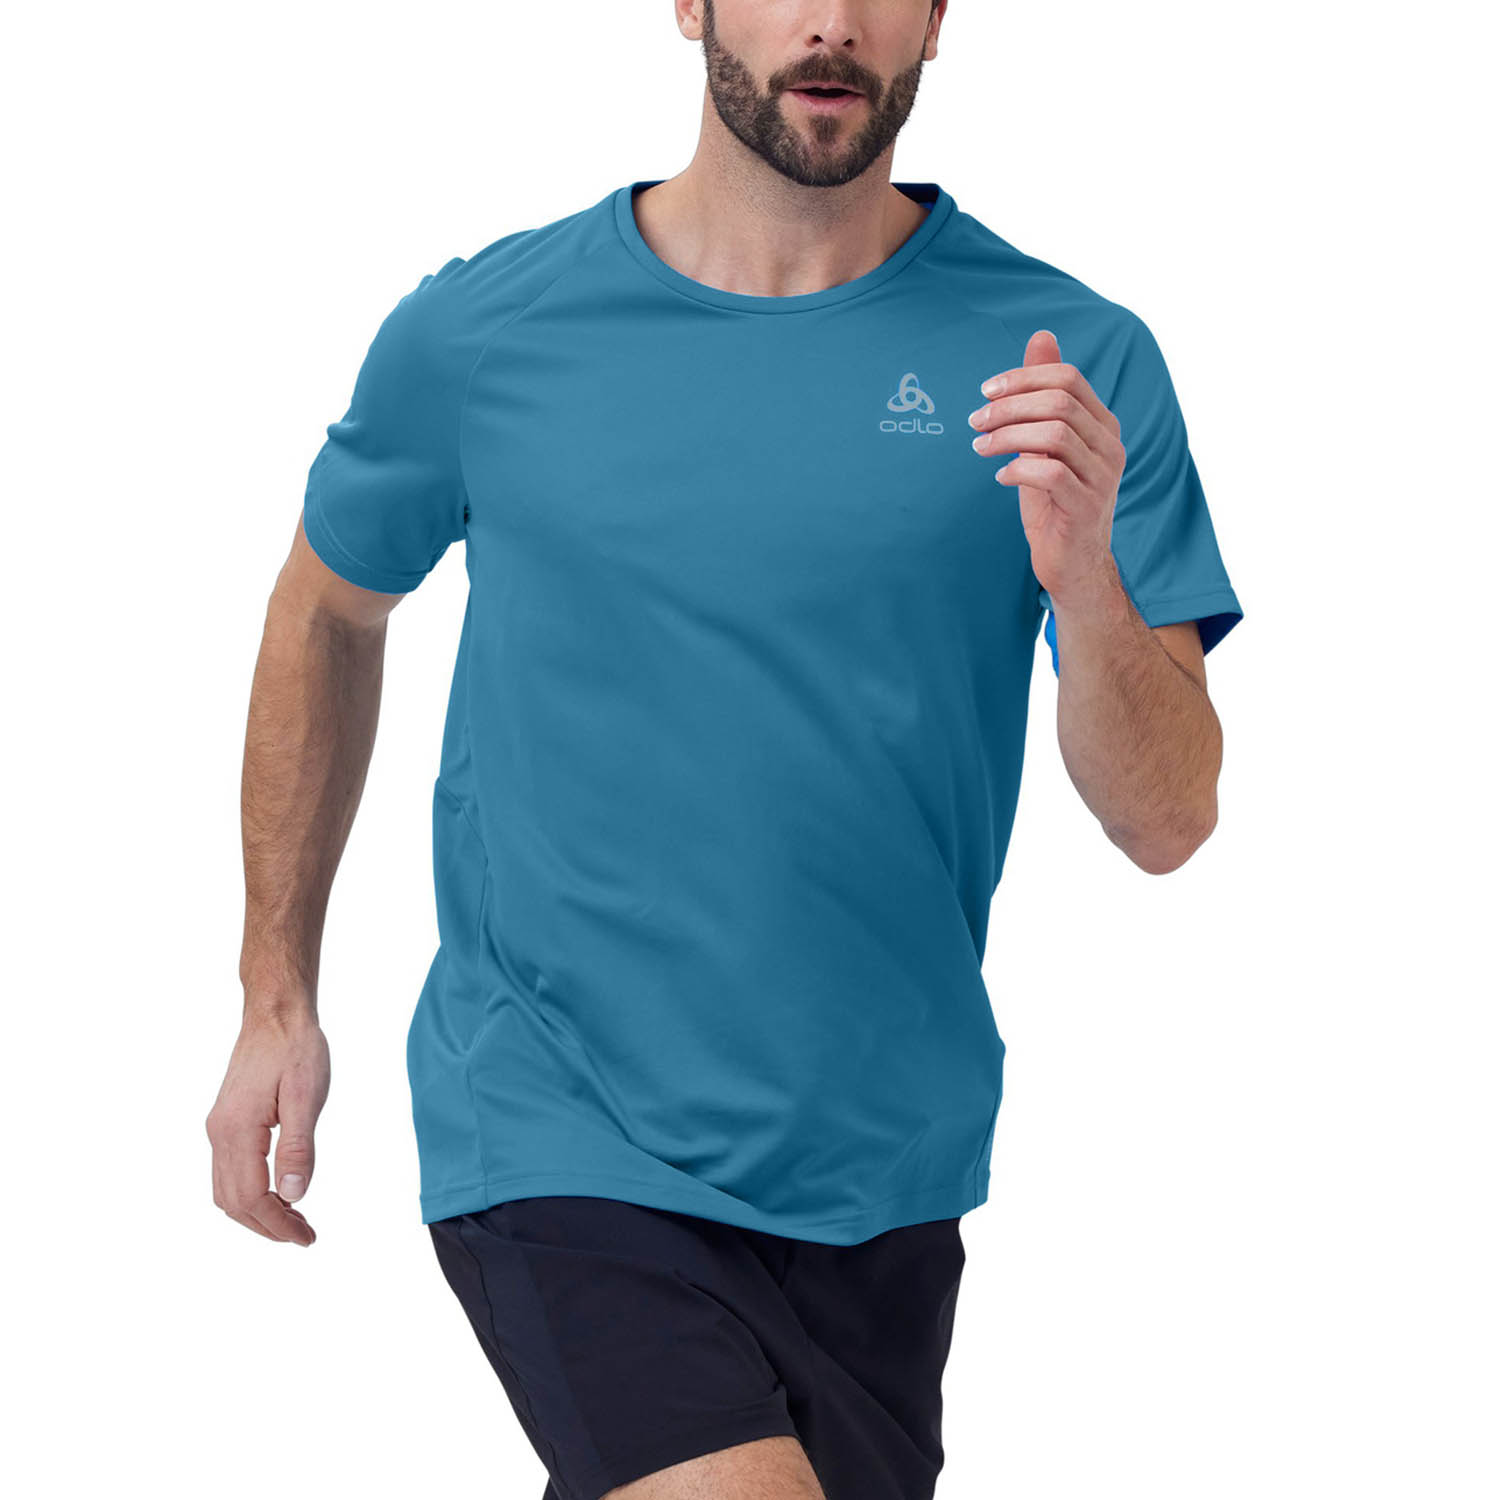 Odlo Crew Essential Camiseta de Running Hombre Saxony Blue